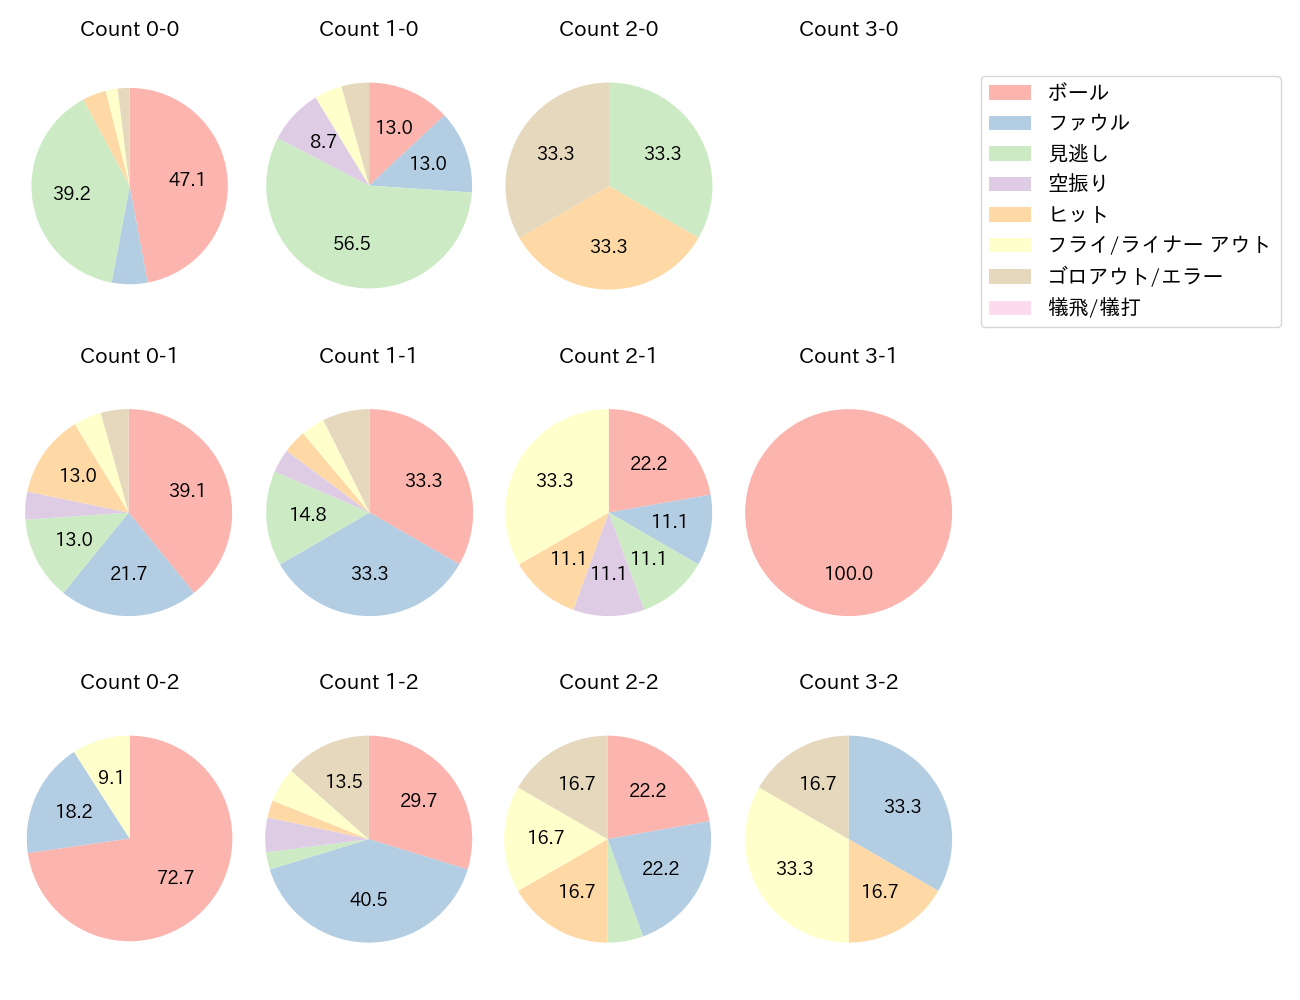 福田 周平の球数分布(2021年7月)